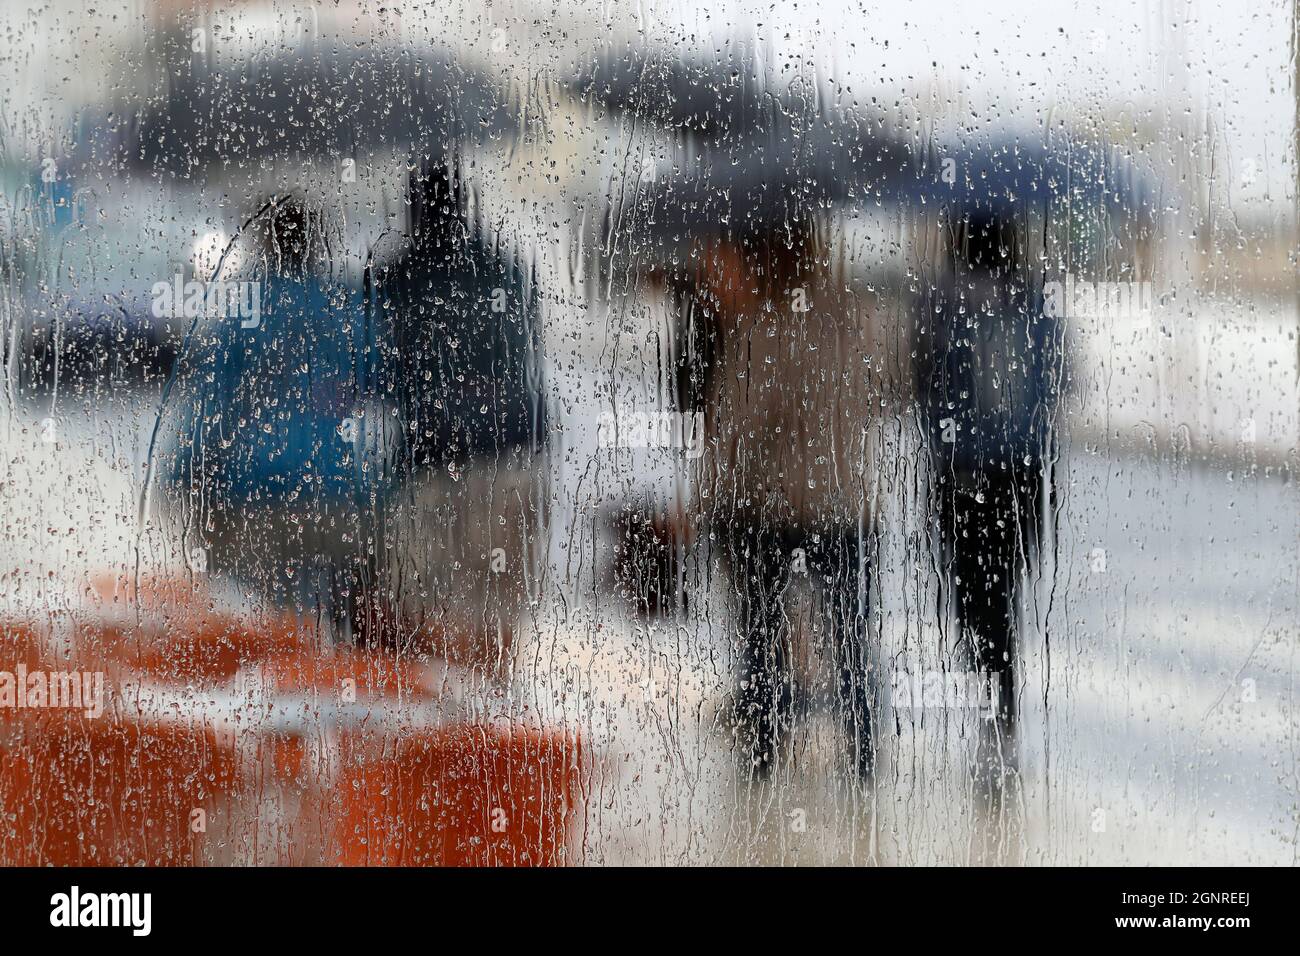 Personnes marchant avec un parapluie dans la scène des jours de pluie. Nazaré. Portugal. Banque D'Images